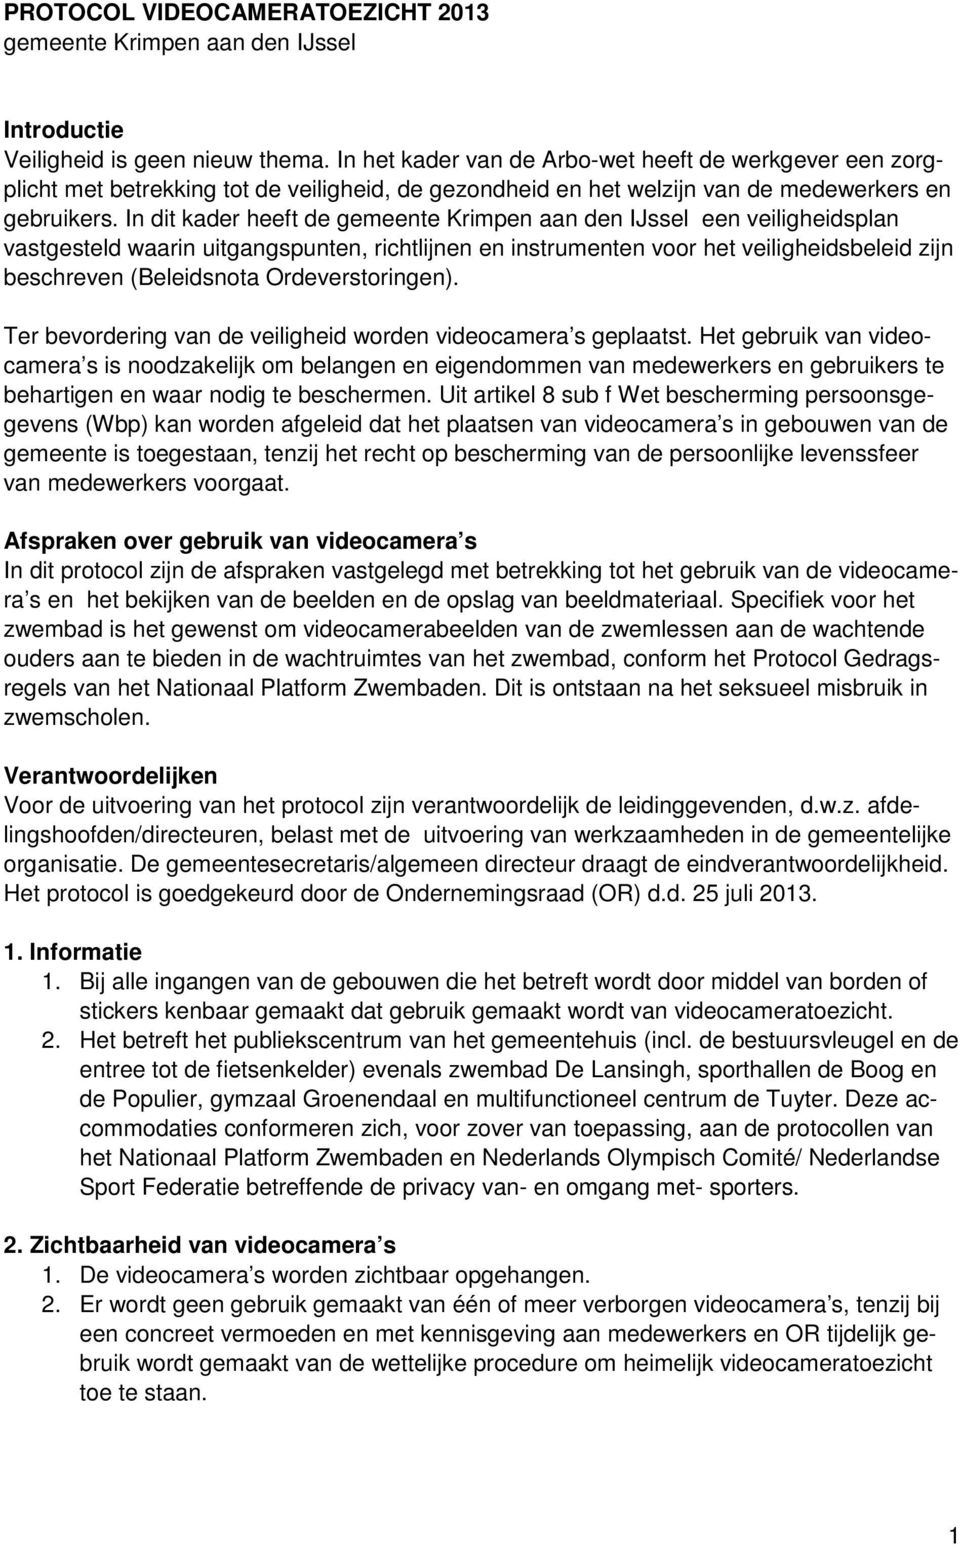 In dit kader heeft de gemeente Krimpen aan den IJssel een veiligheidsplan vastgesteld waarin uitgangspunten, richtlijnen en instrumenten voor het veiligheidsbeleid zijn beschreven (Beleidsnota